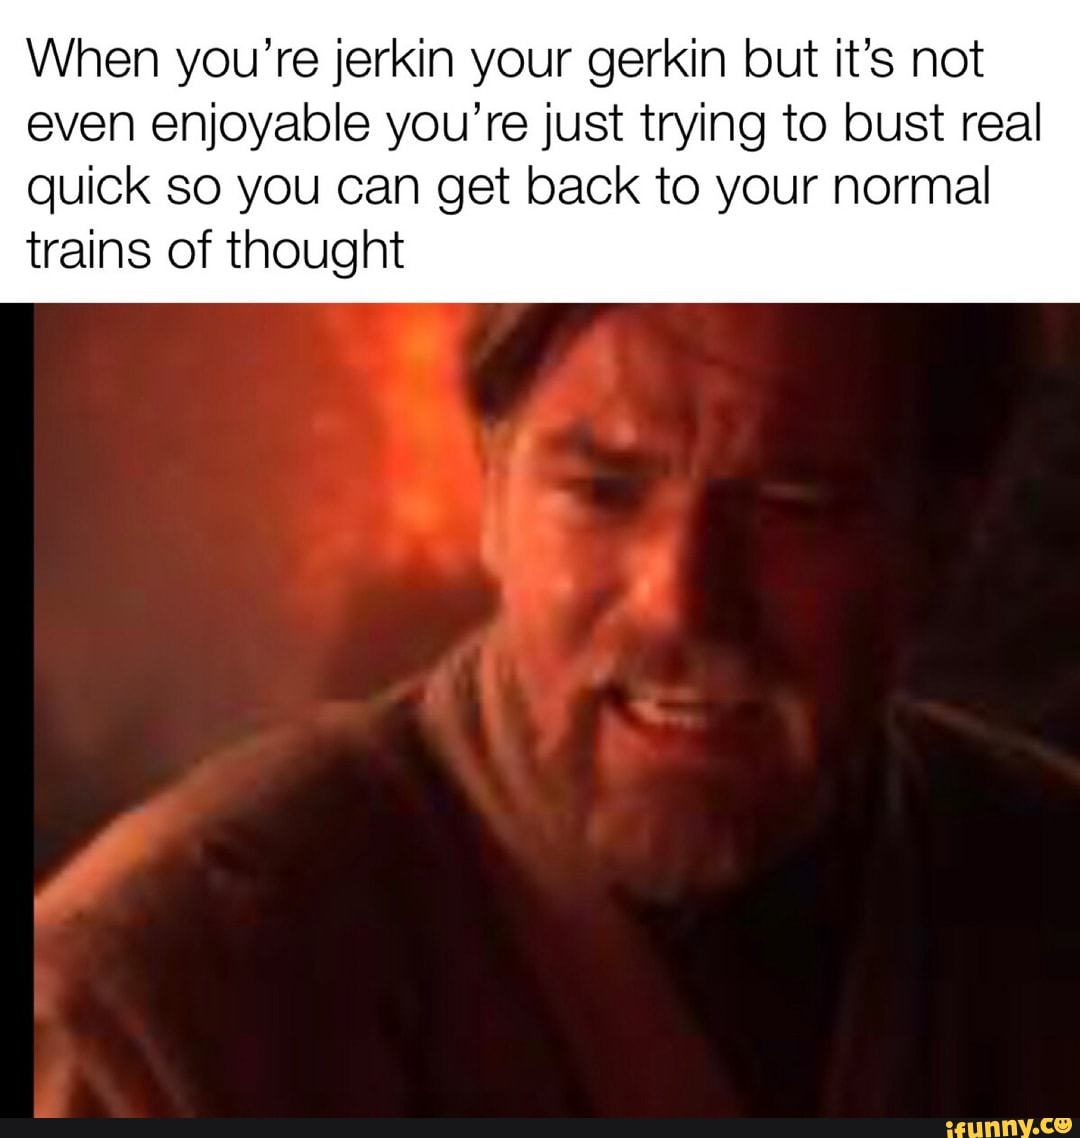 Jerkin the gerkin